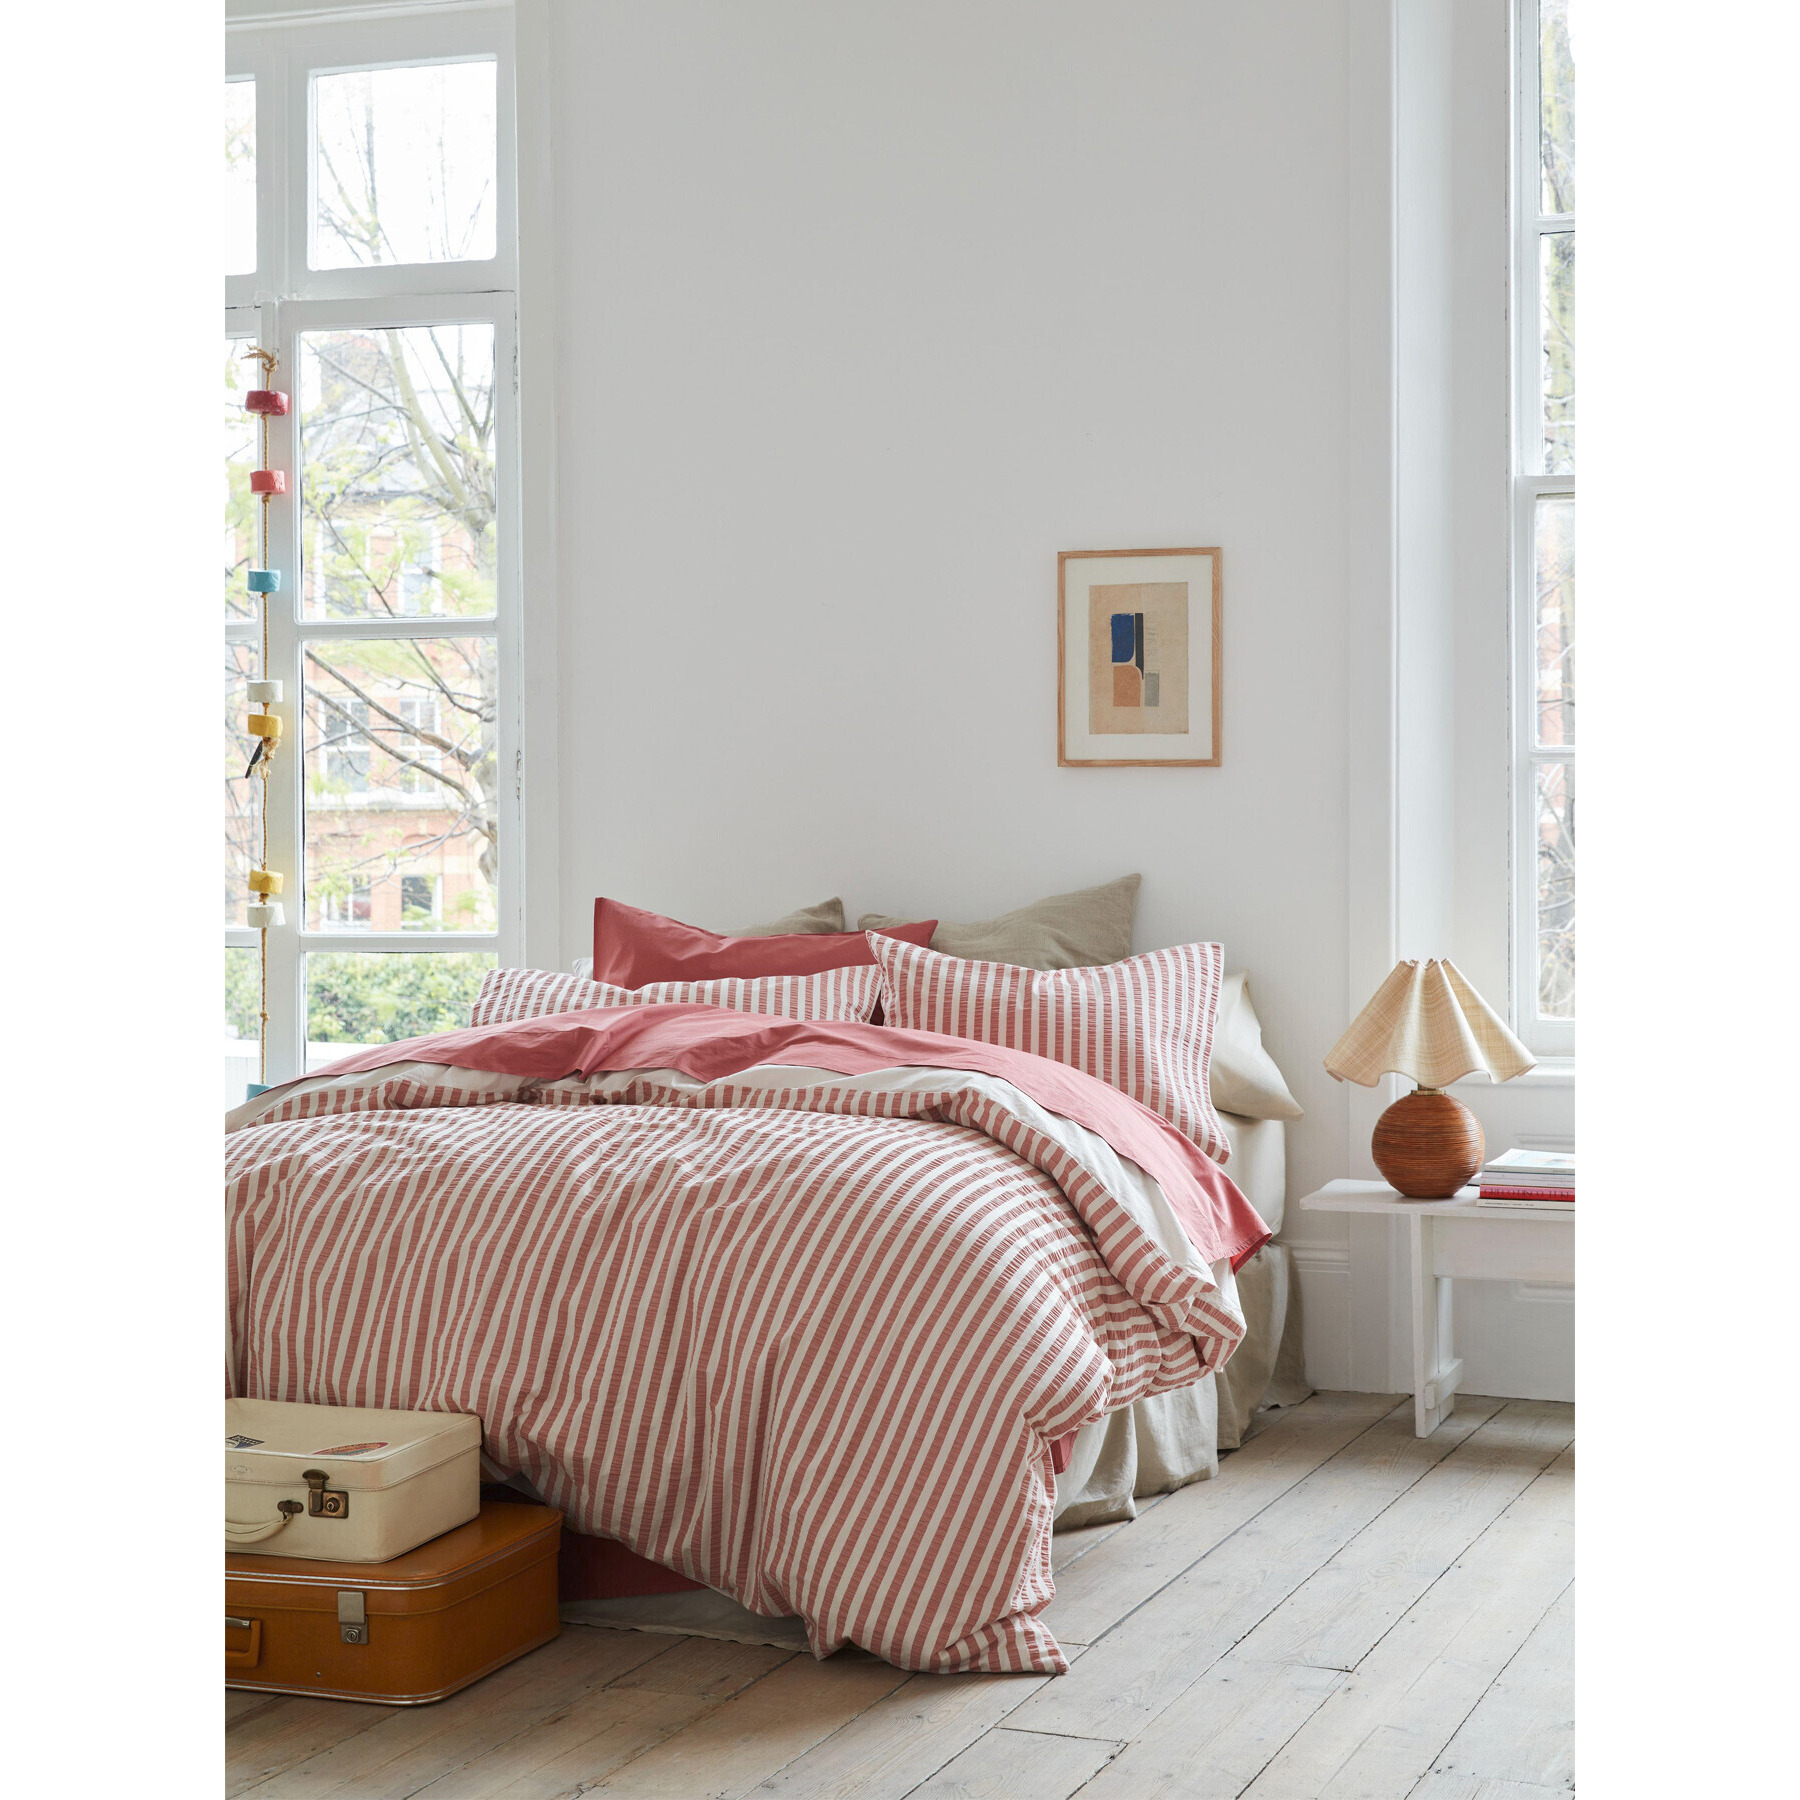 Piglet in Bed Seersucker Cotton Duvet Cover - Size Double Pink - image 1